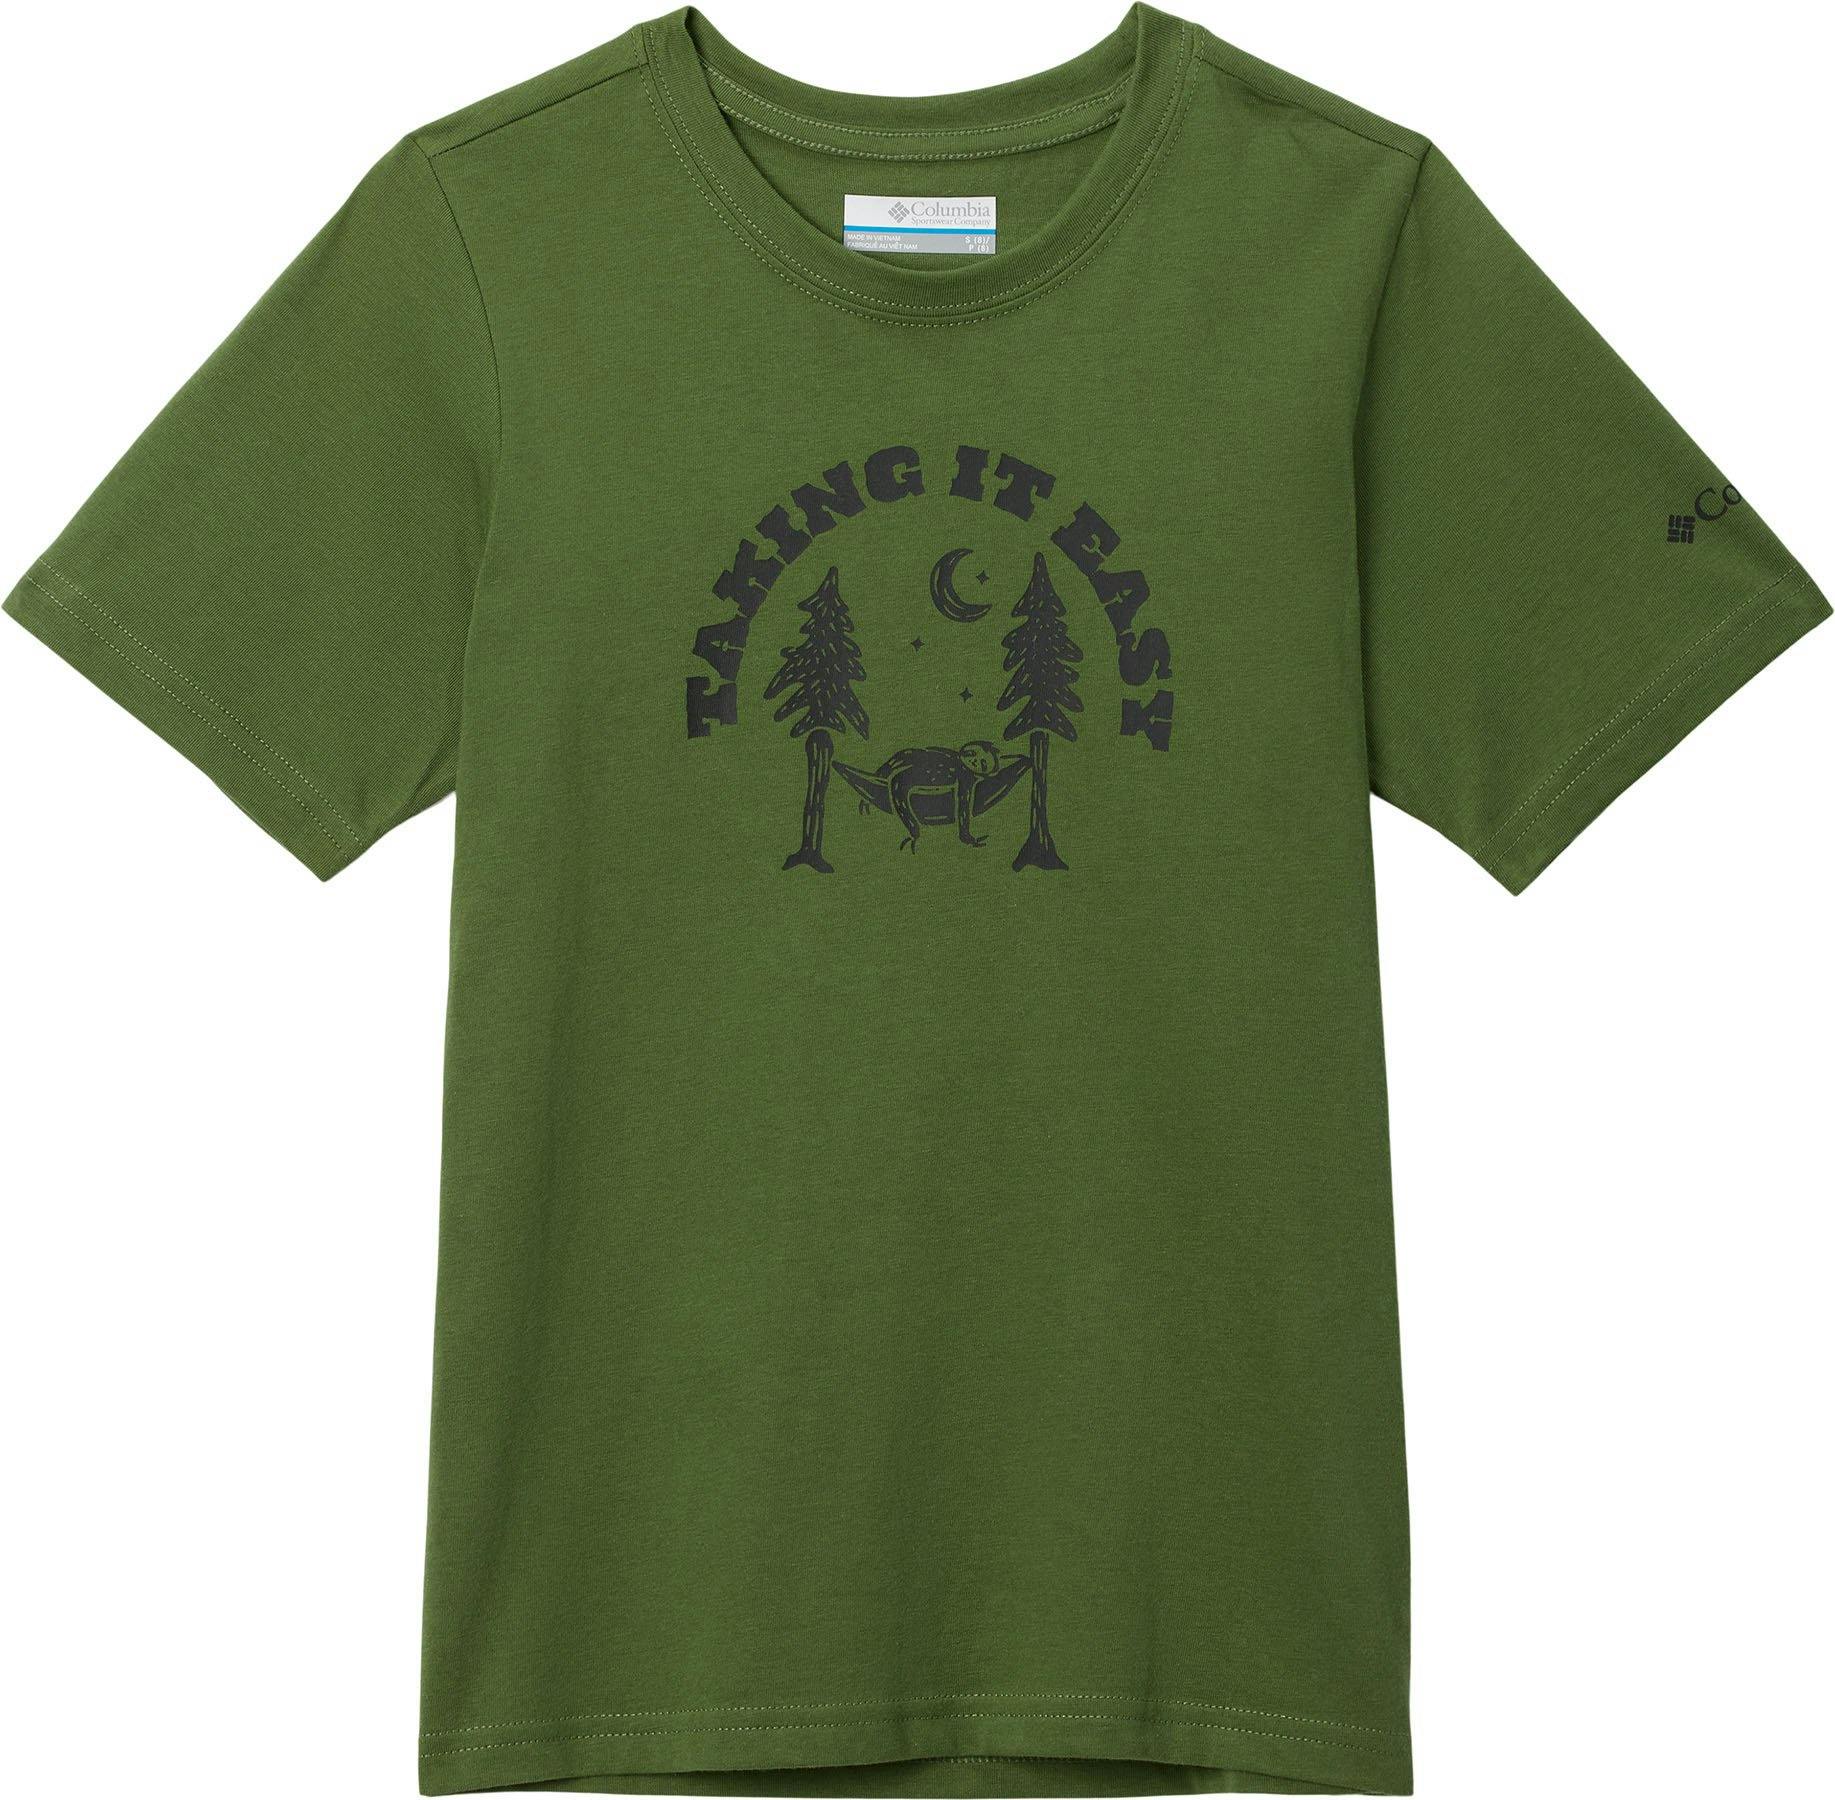 Image de produit pour T-shirt graphique à manches courtes Valley Creek - Garçon